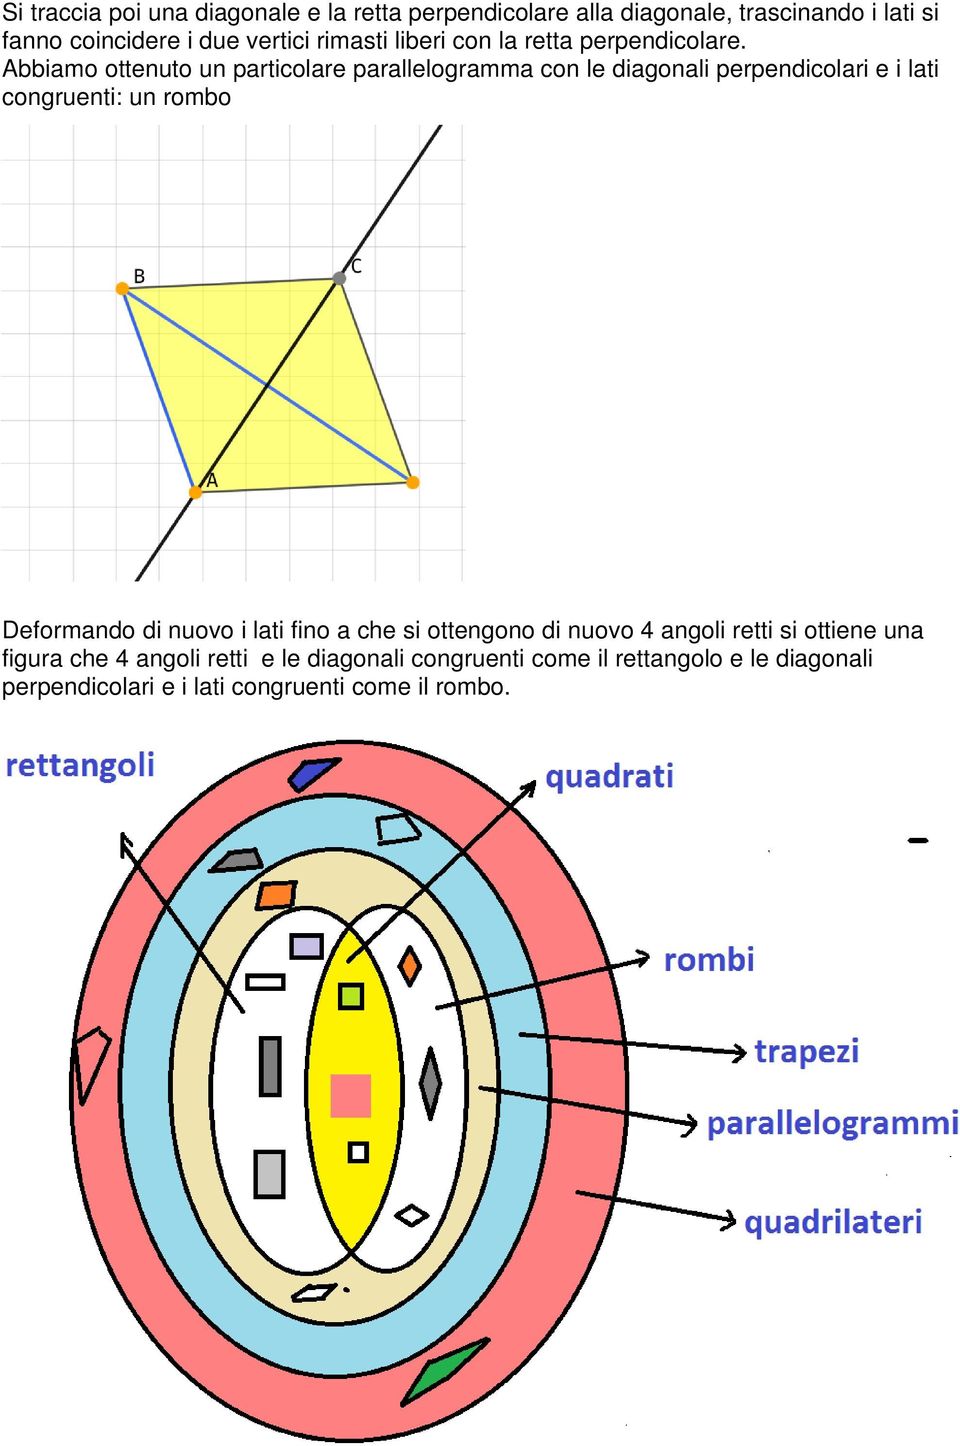 Abbiamo ottenuto un particolare parallelogramma con le diagonali perpendicolari e i lati congruenti: un rombo Deformando di